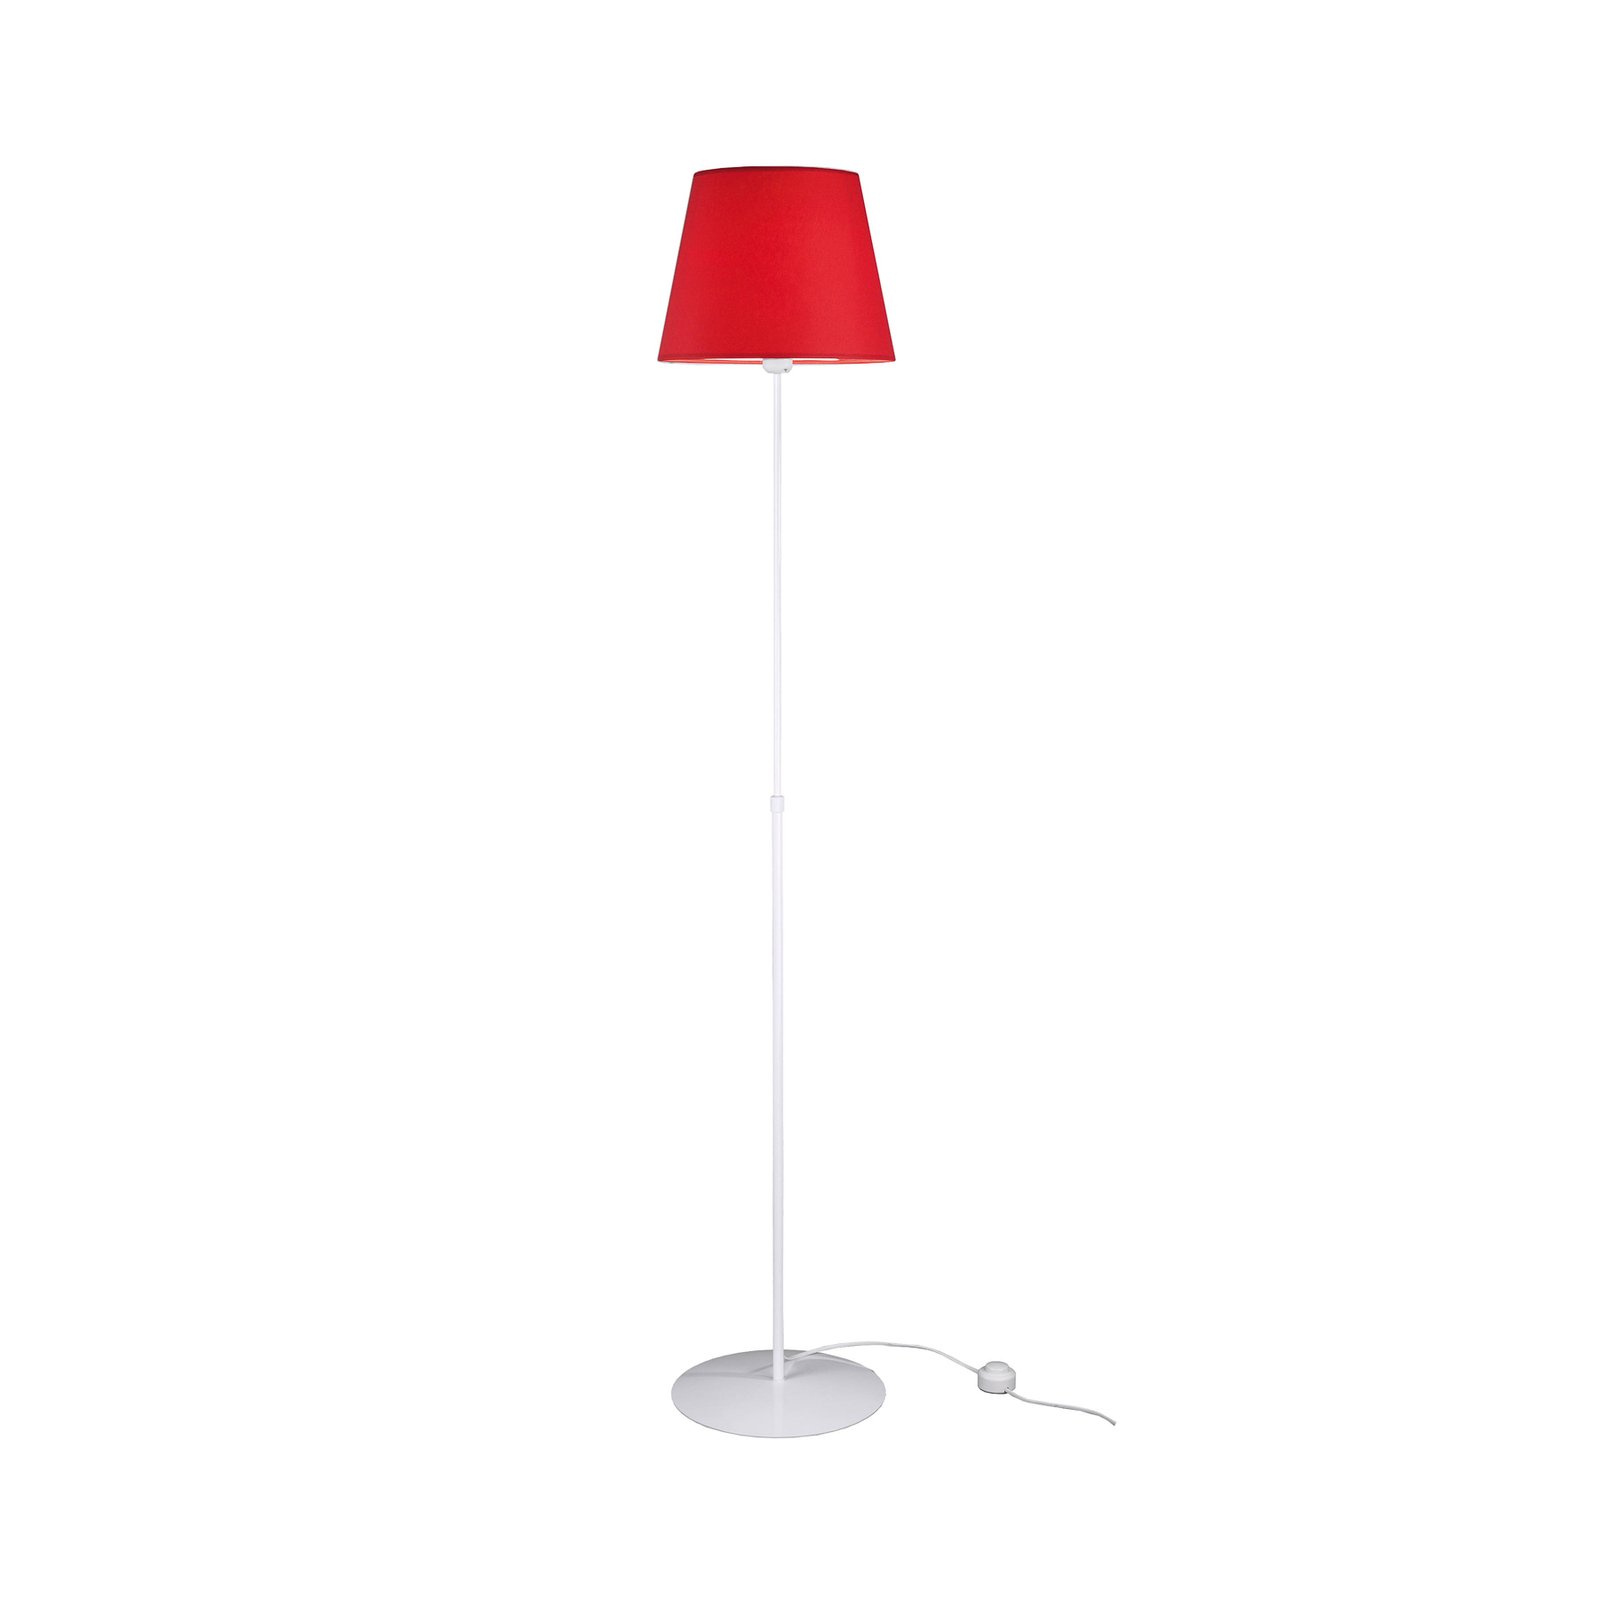 Aluminor Store stojací lampa, bílá/červená